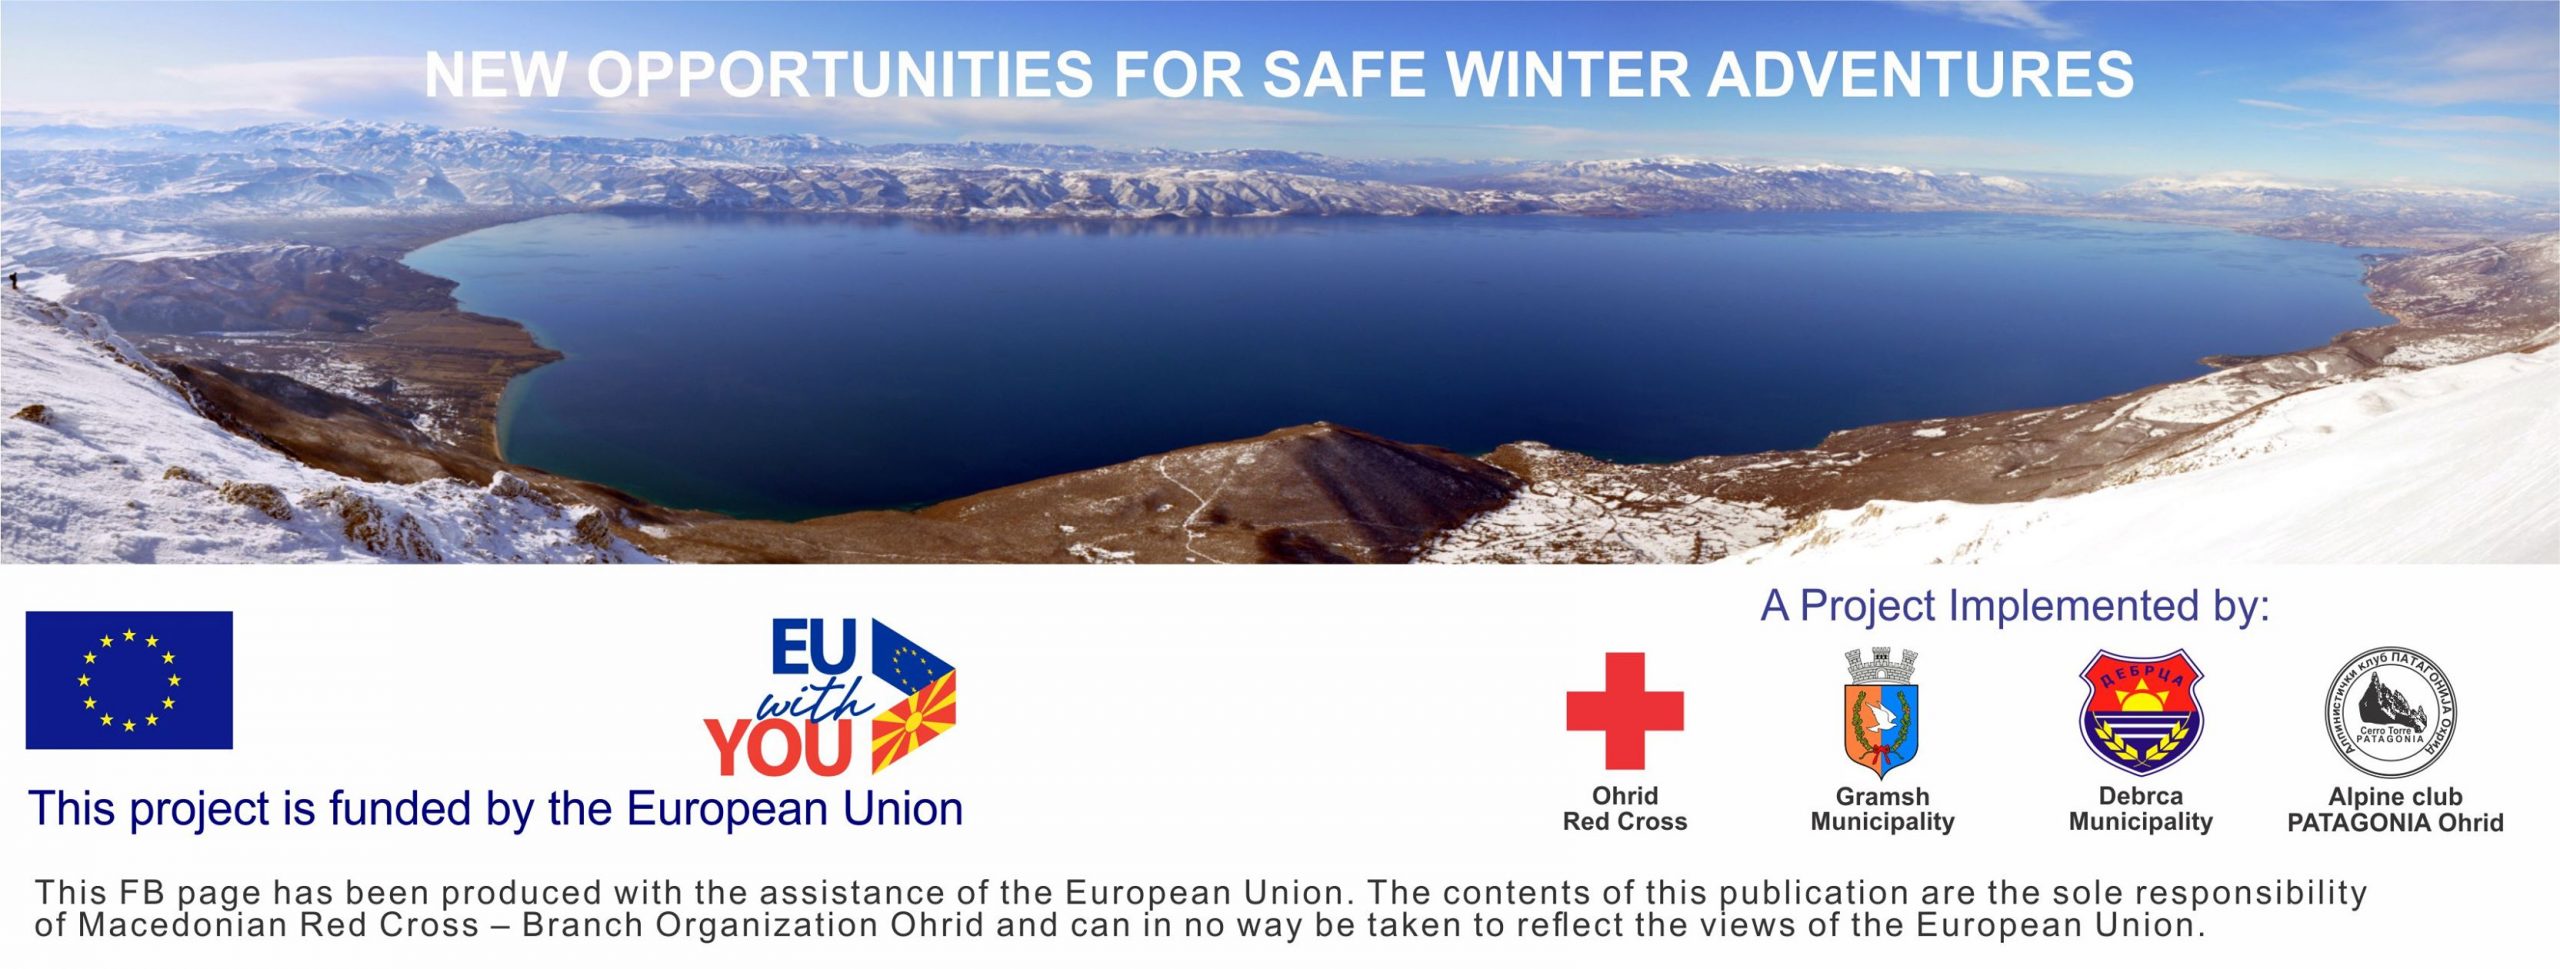 Презентација на возилата и специјализираната опрема за спасување во зимски услови, во рамки на Проектот: „Нови можности за безбеден зимски авантуристички туризам“.